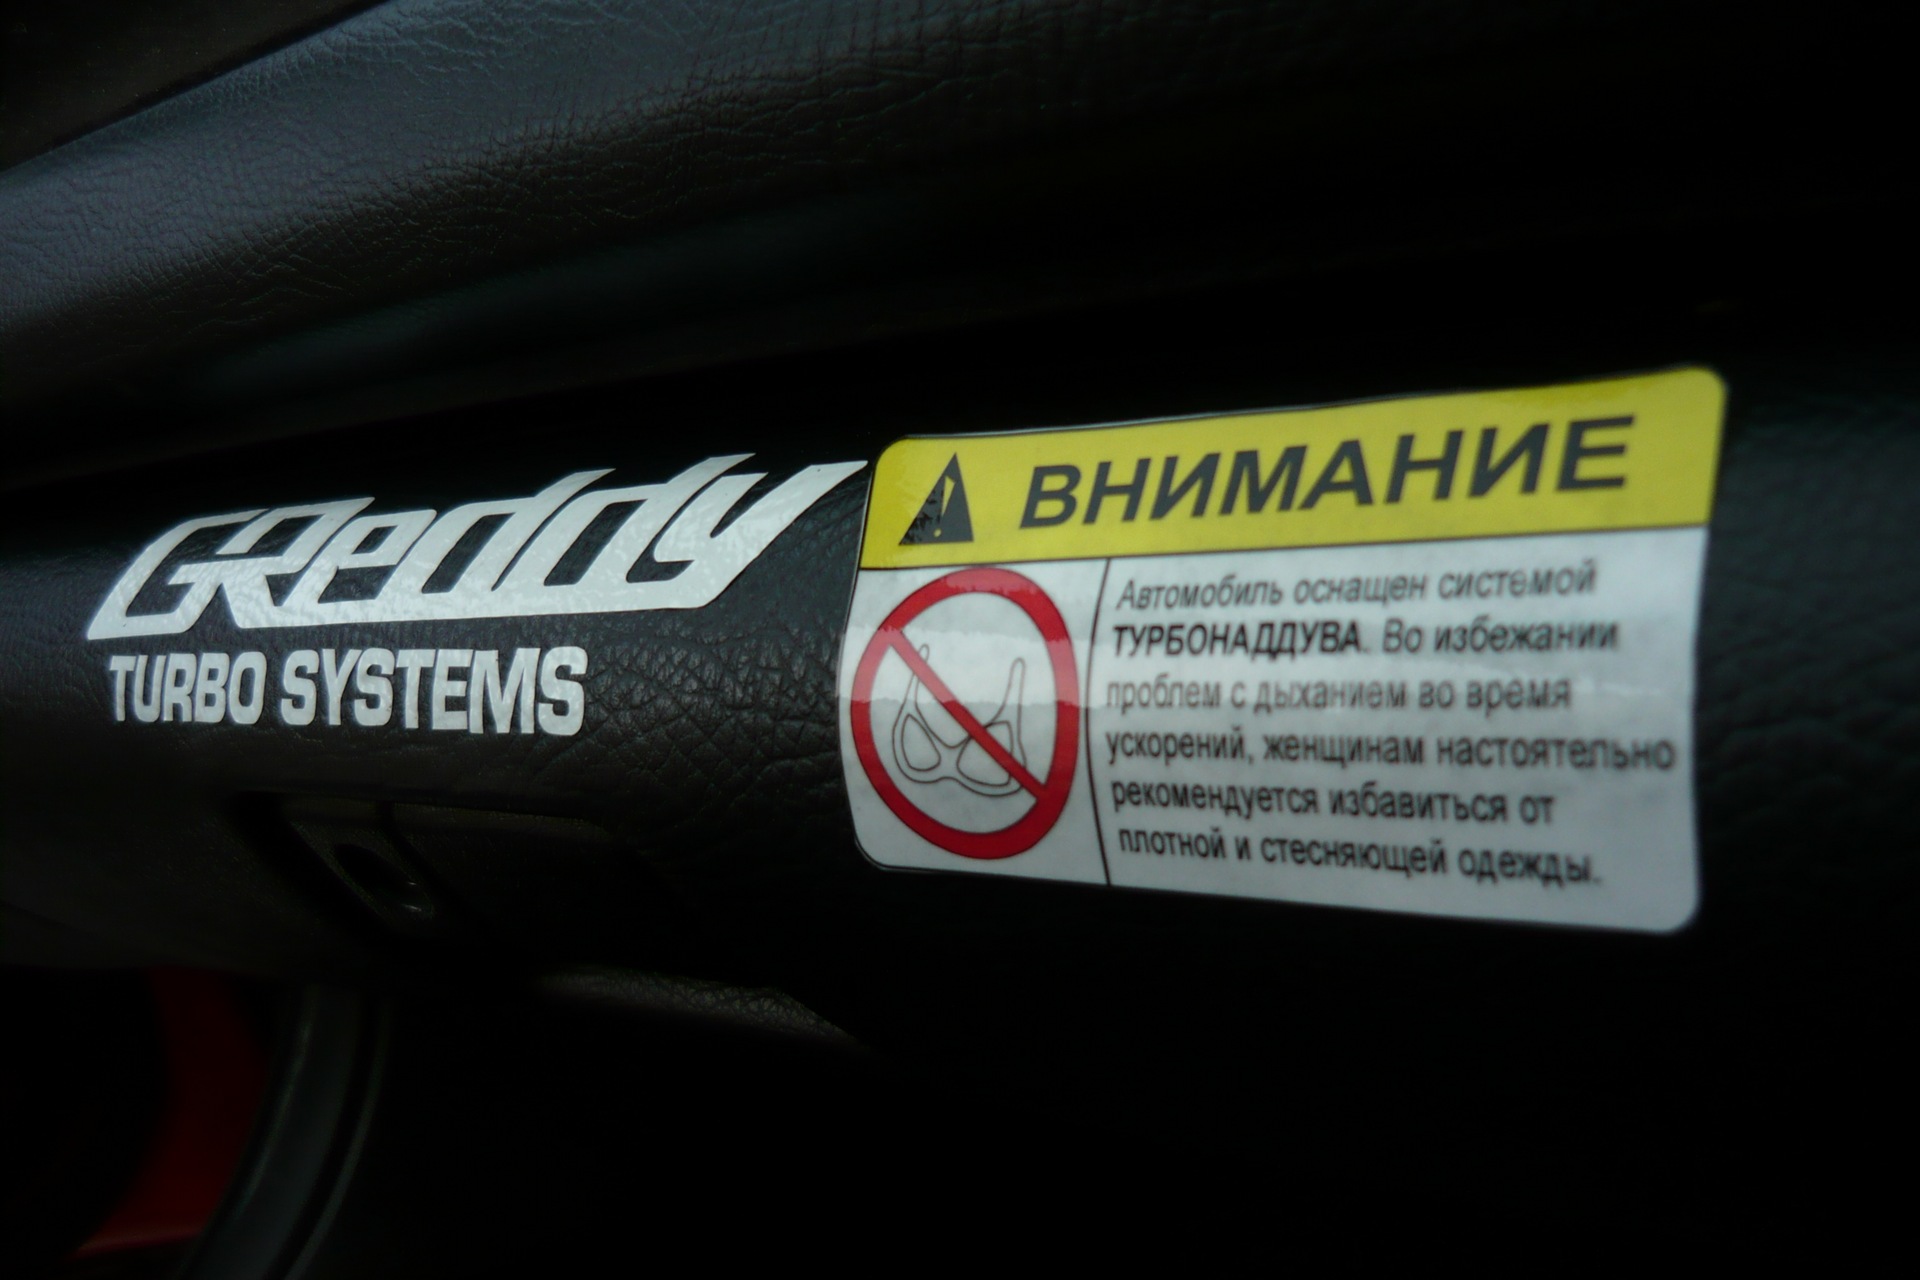 Внимание автомобиль оснащен системой турбонаддува наклейка. Attention system